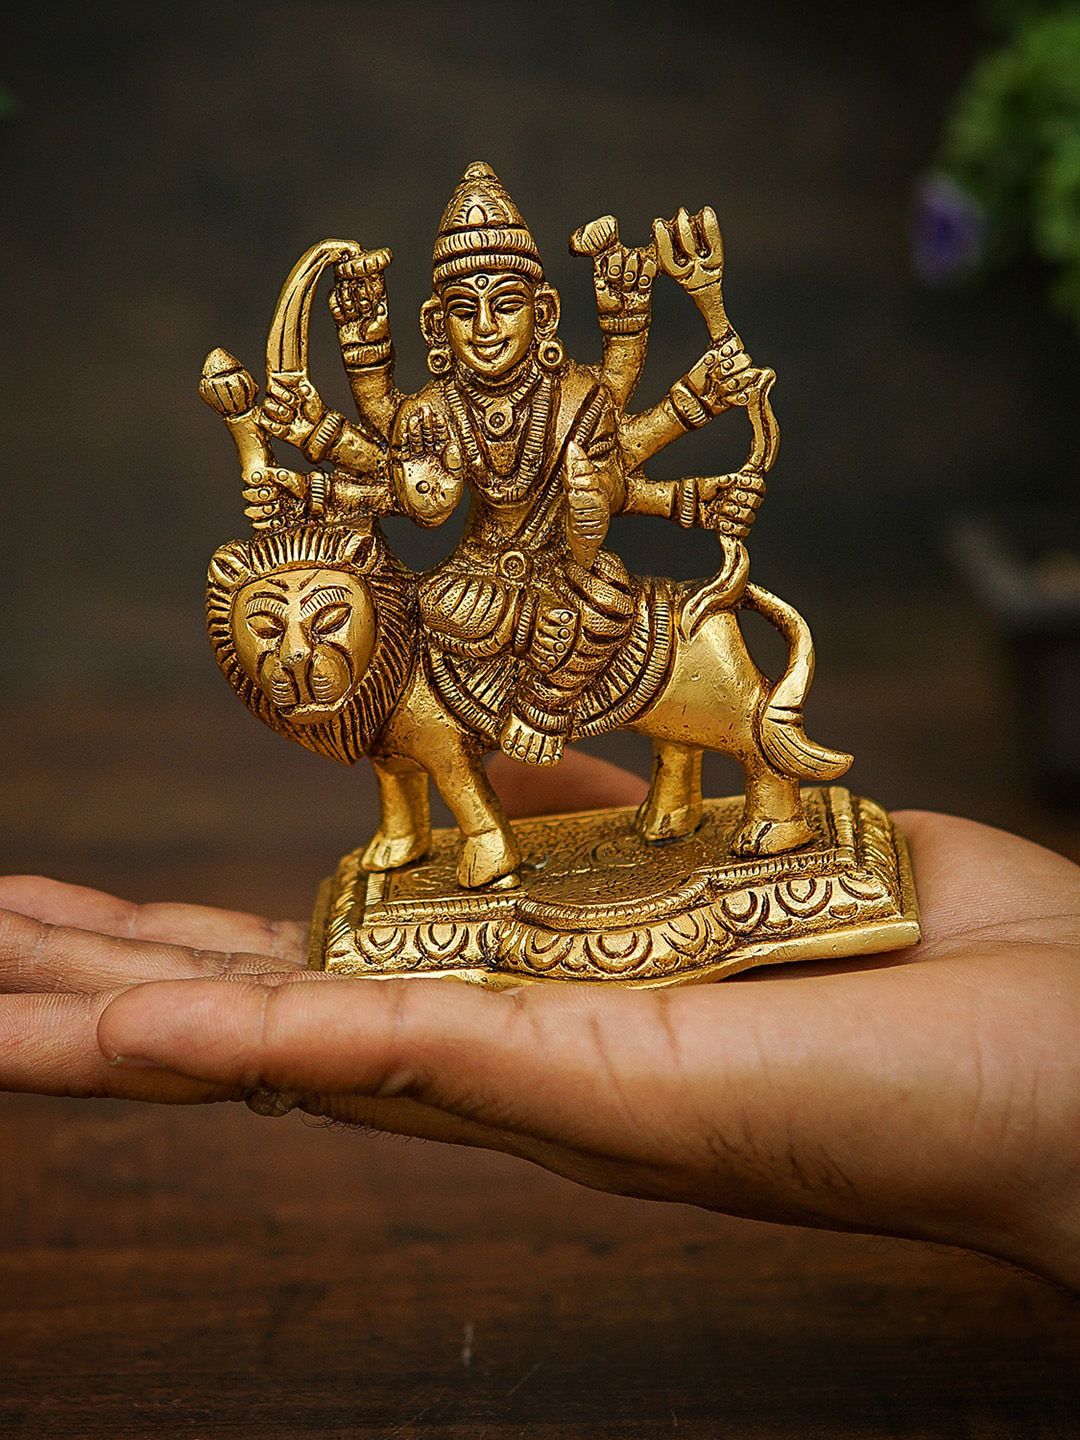 StatueStudio Gold-Toned Mini Durga Idol Showpieces Price in India